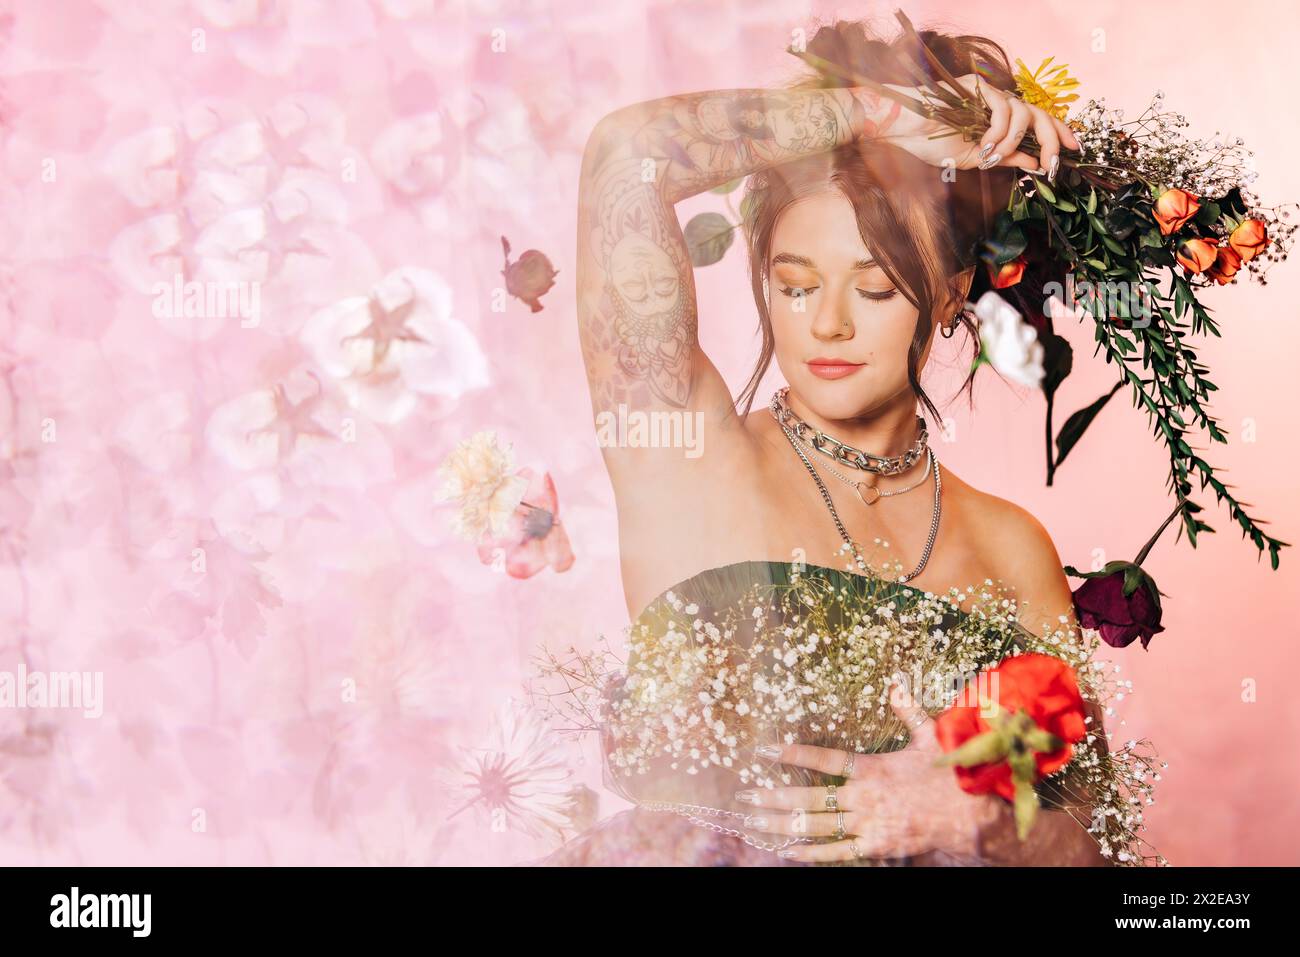 Portrait de studio aux tons roses d'une jeune femme entourée de fleurs Banque D'Images